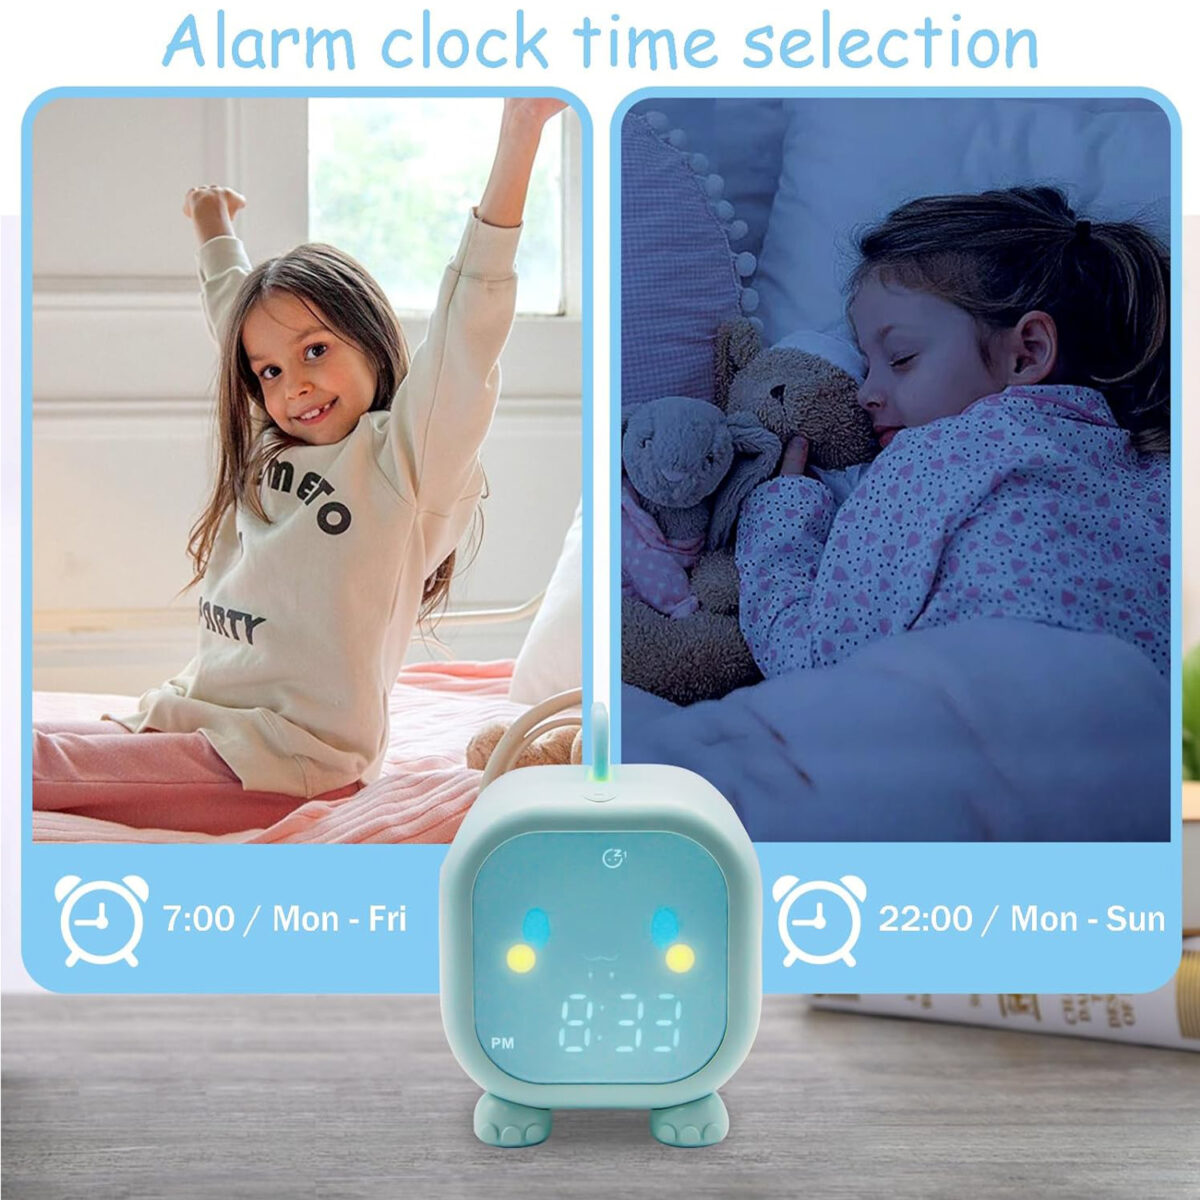 alarm clock for bedroom